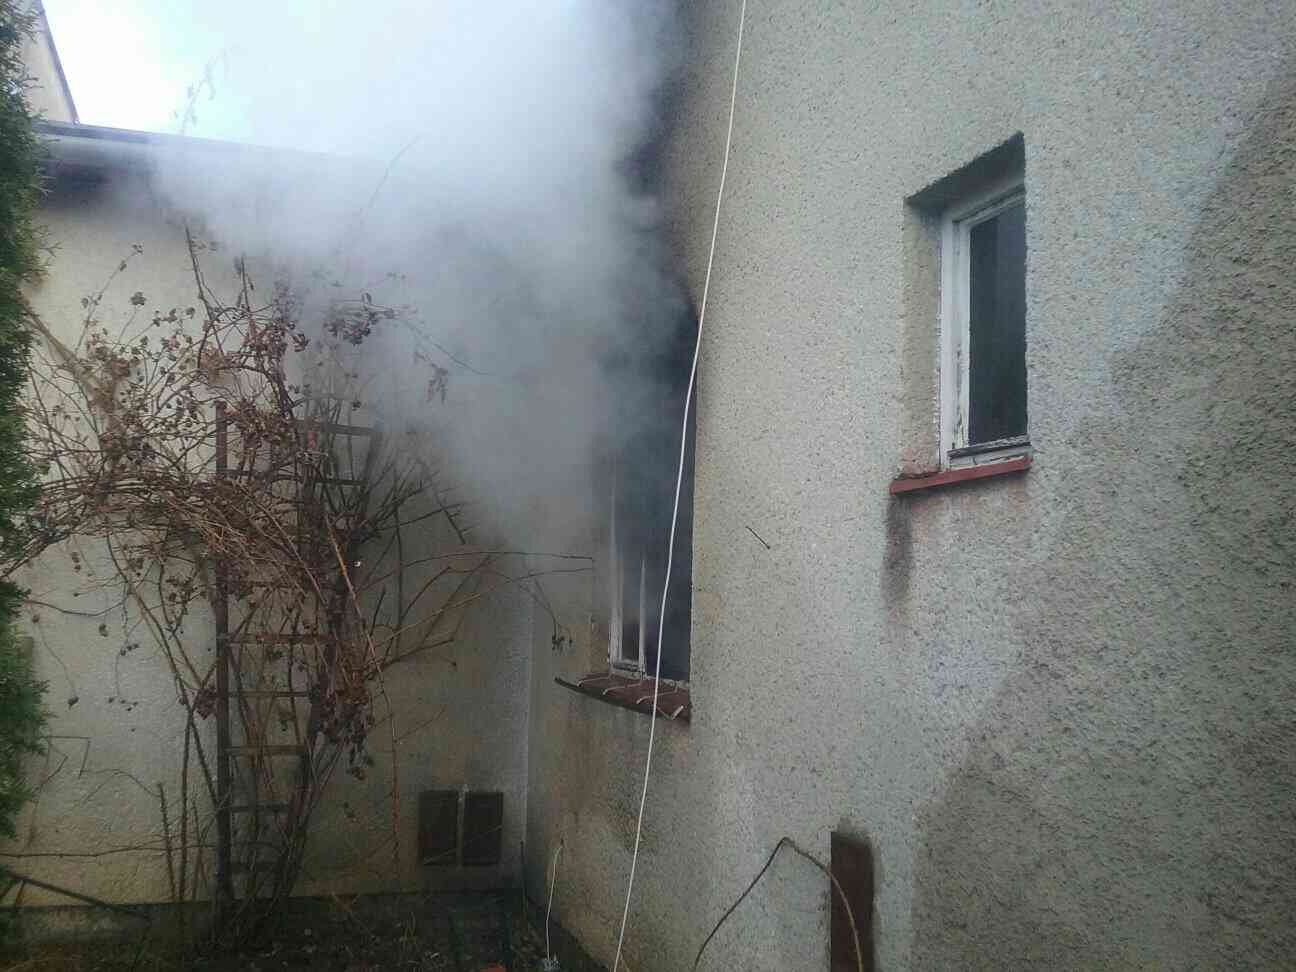 1 - Požiar bytu pravdepodobne spôsobila varná kanvica